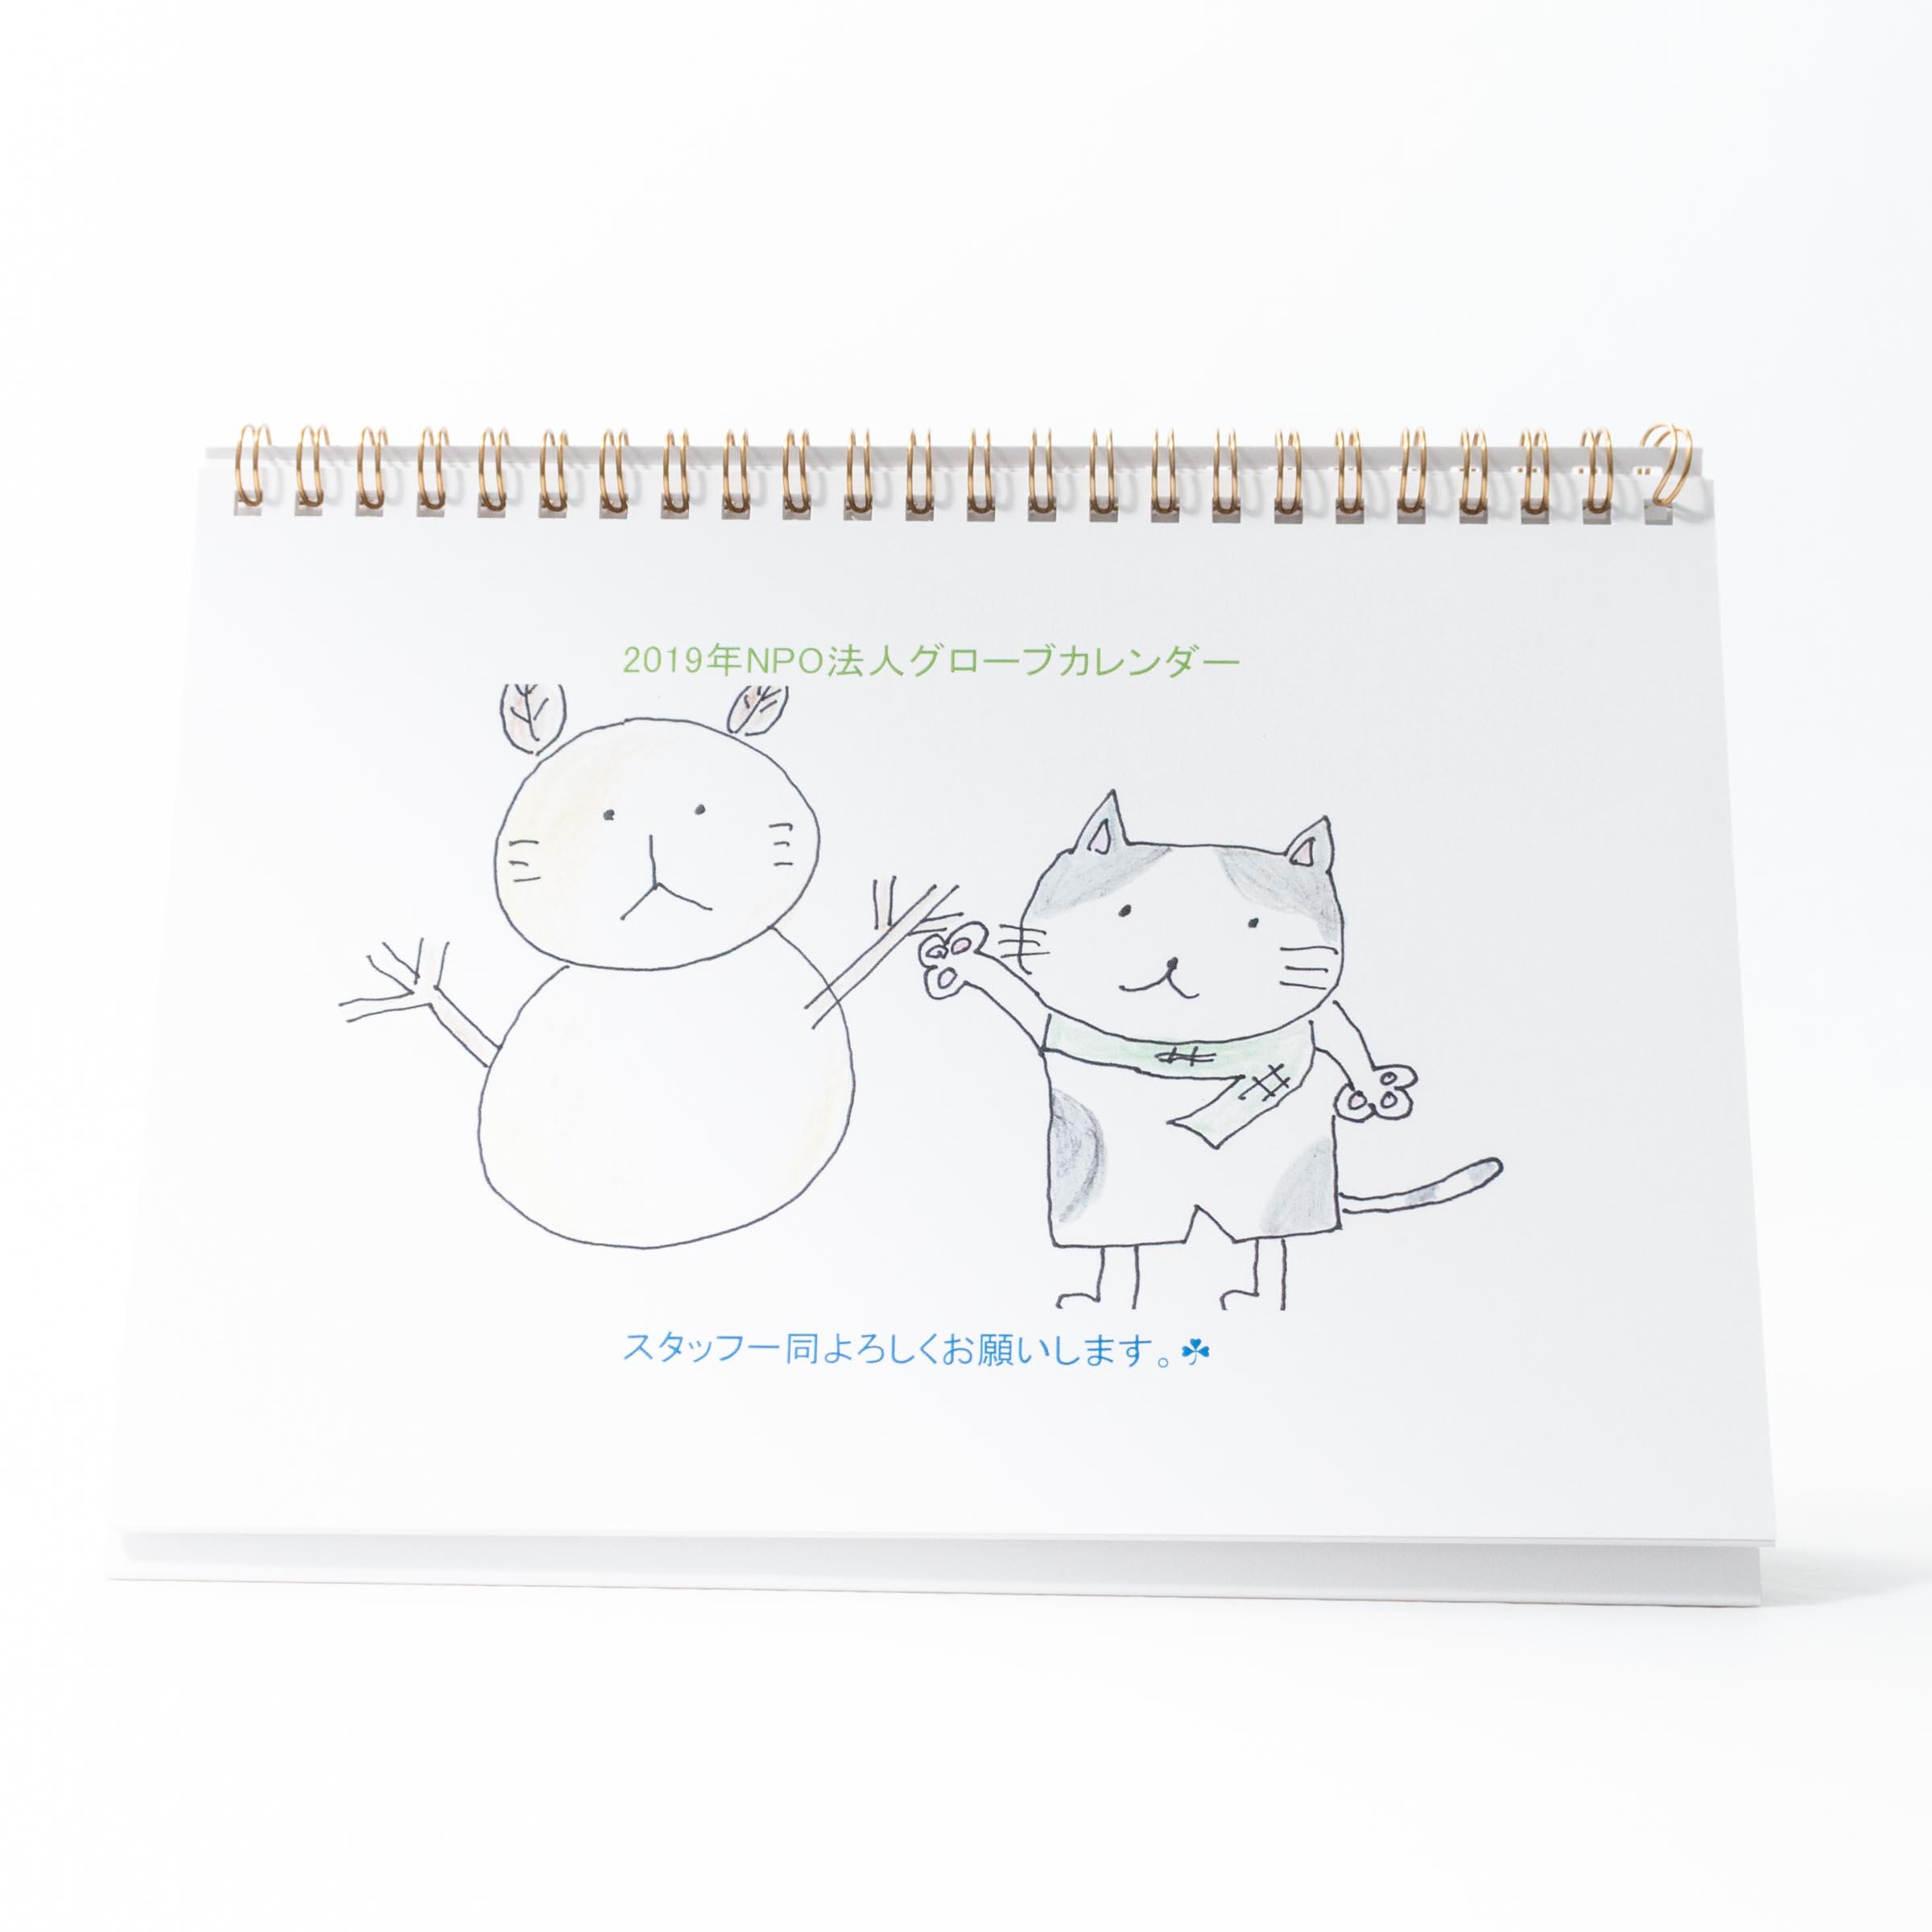 「岩崎　有子 様」製作のオリジナルカレンダー